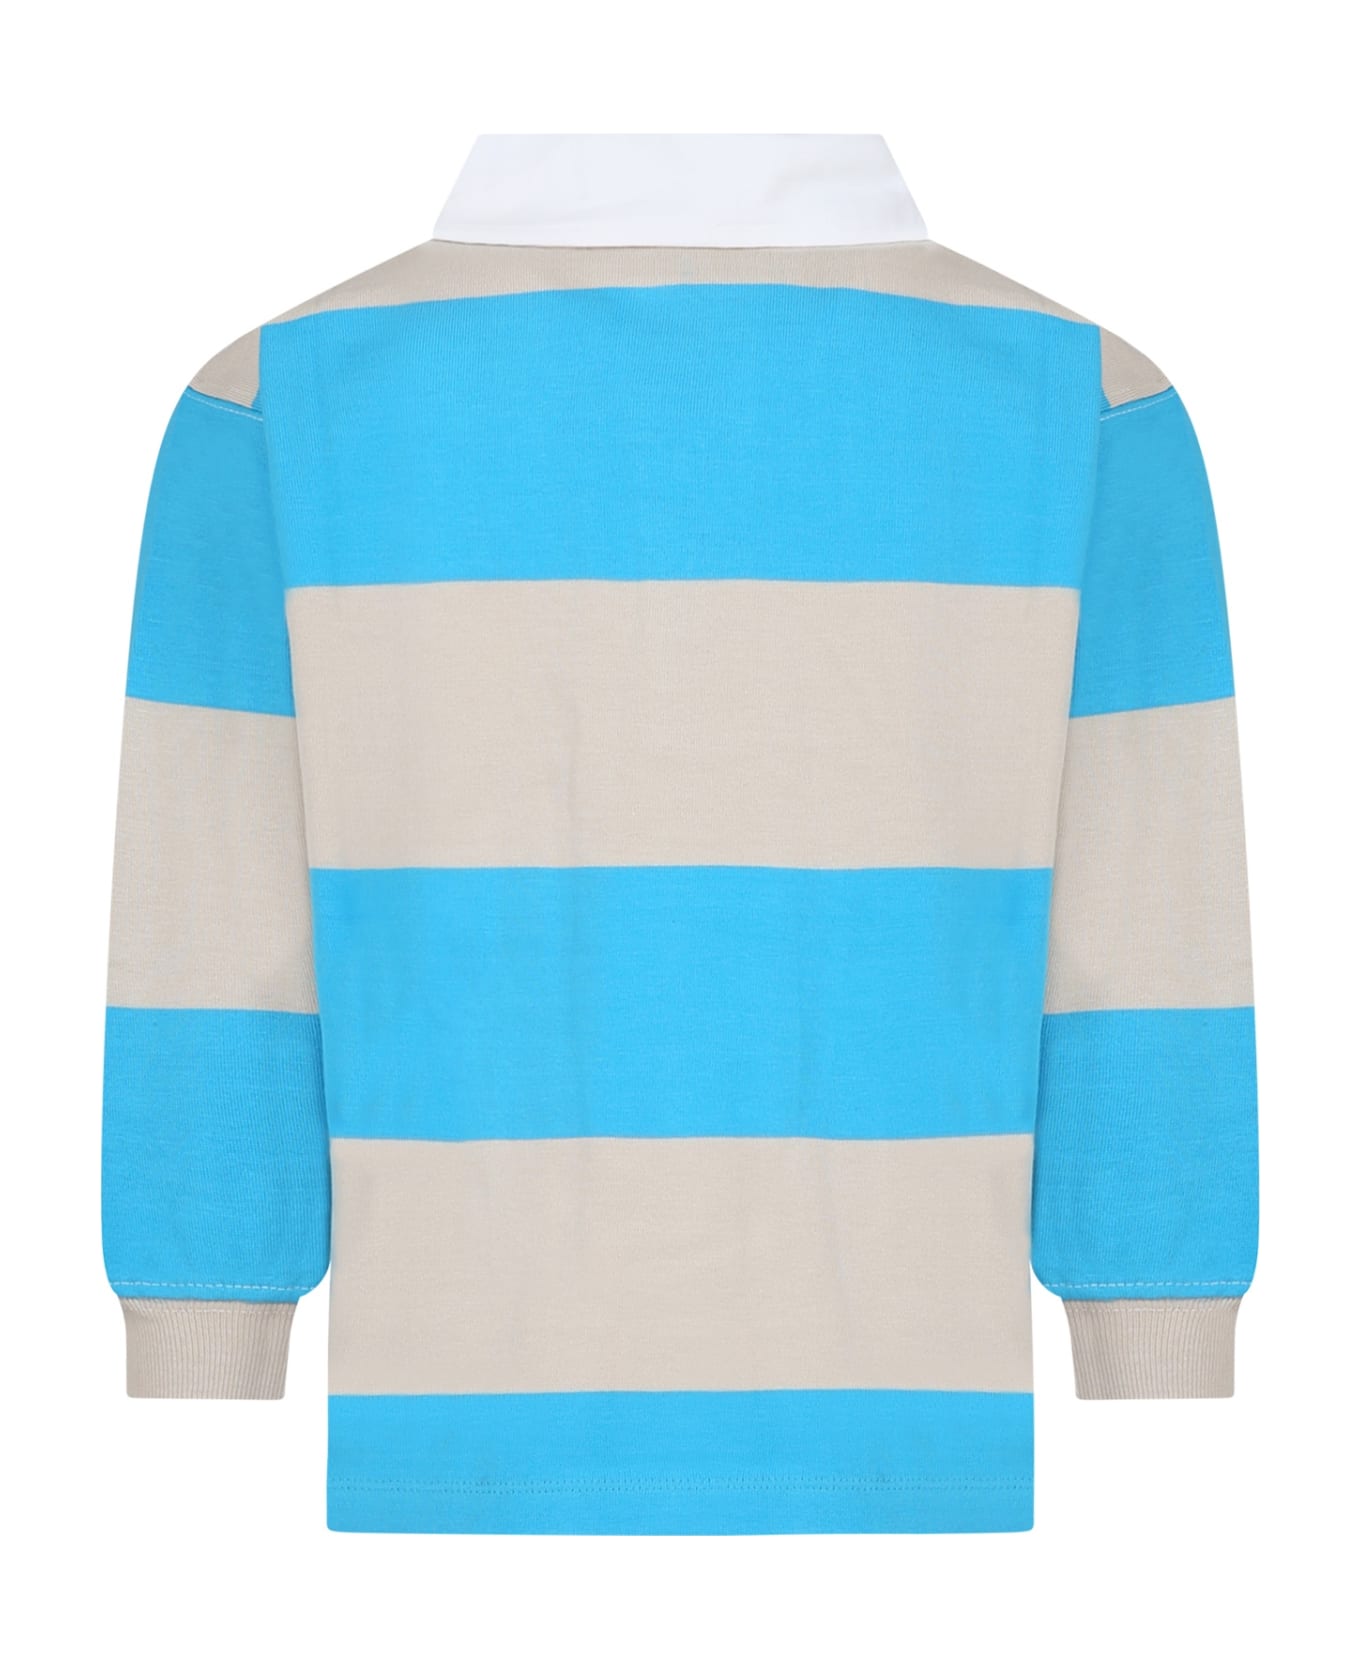 Molo Light Blue Polo Shirt For Boy - Multicolor